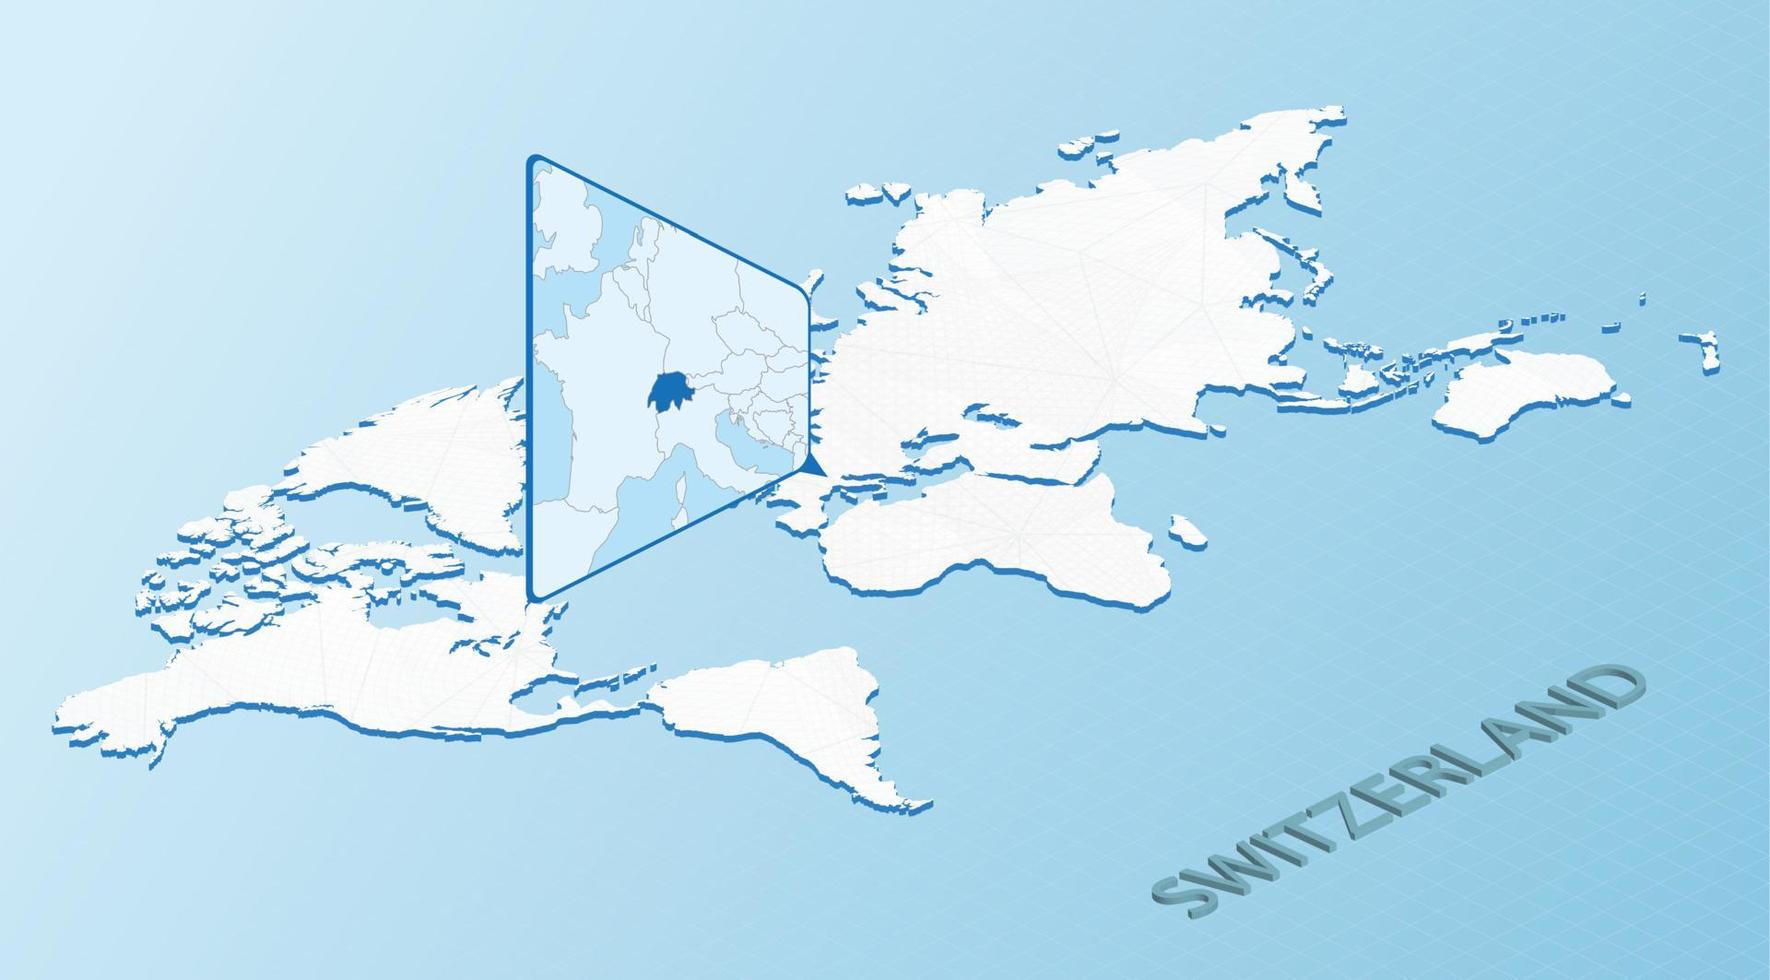 mondo carta geografica nel isometrico stile con dettagliato carta geografica di Svizzera. leggero blu Svizzera carta geografica con astratto mondo carta geografica. vettore